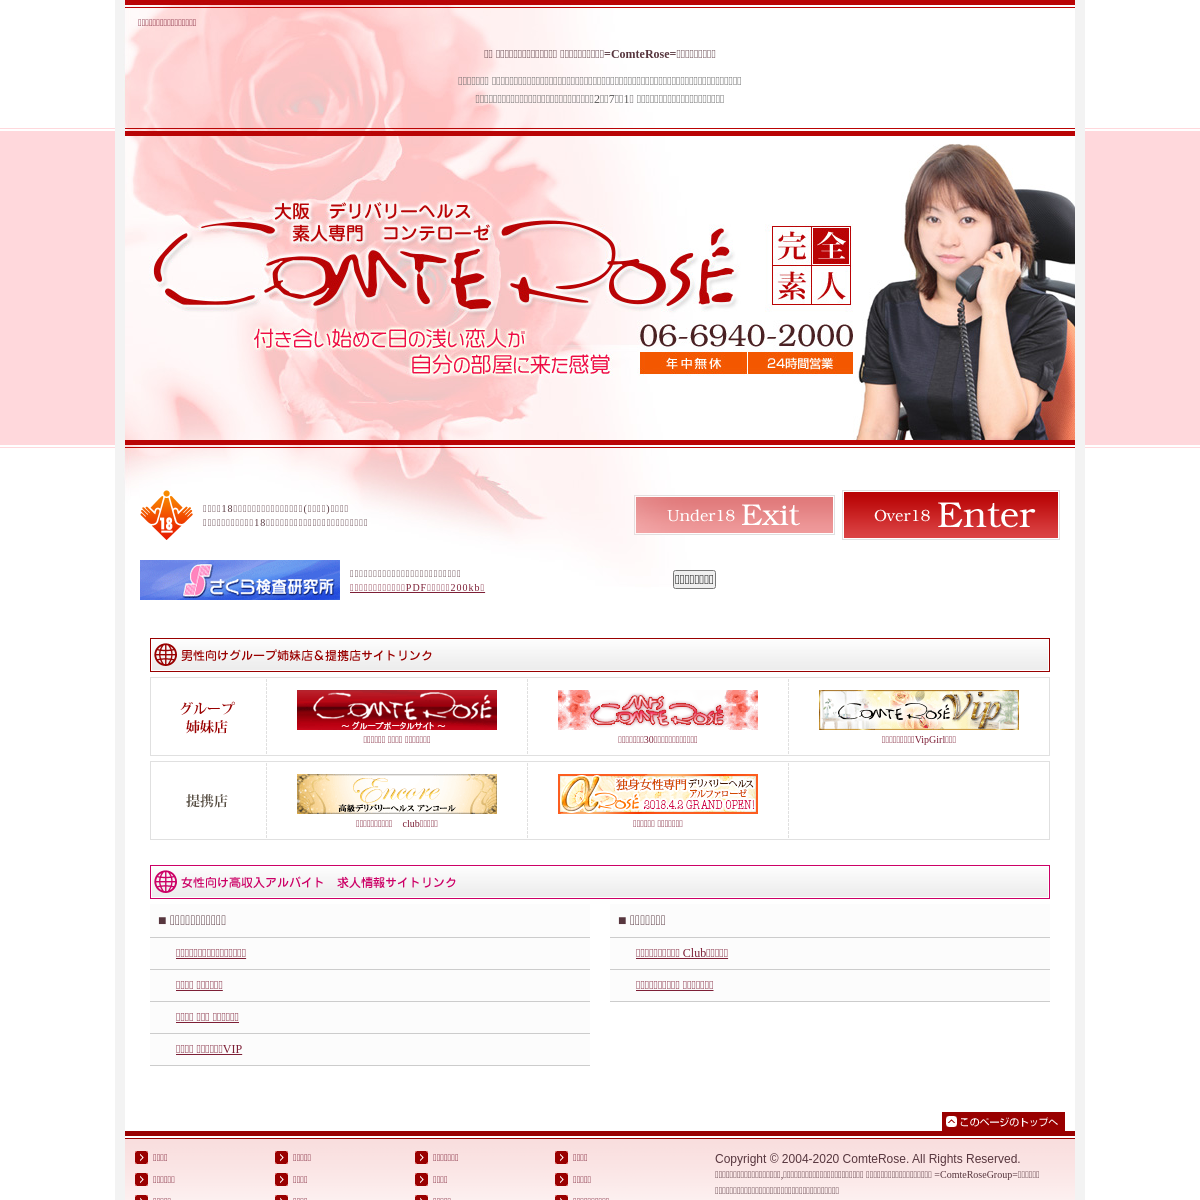 A complete backup of www.www.comterose.jp